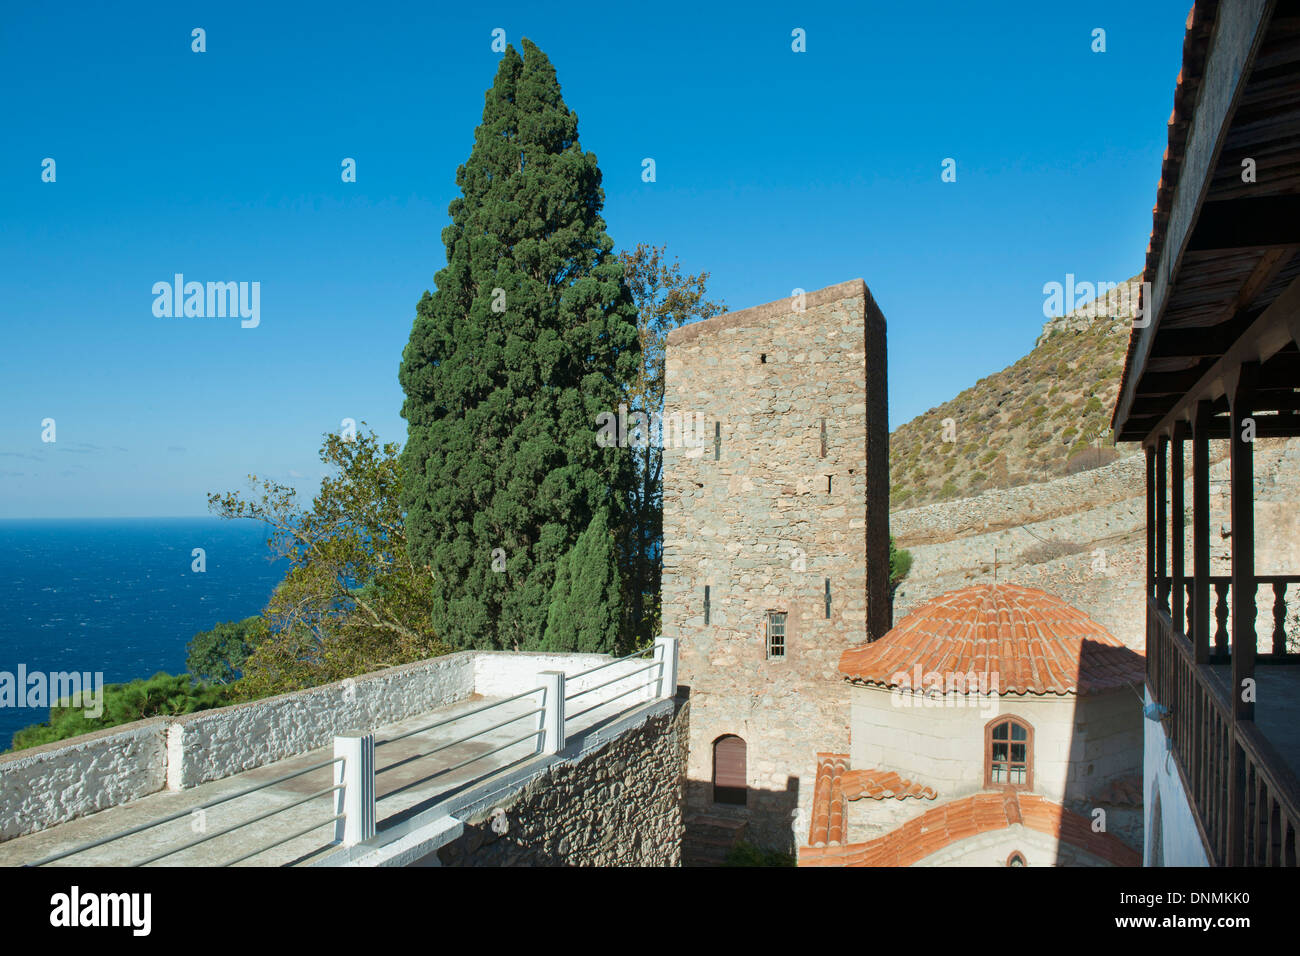 Griechenland, Insel Tilos, Kloster Panteleimonas, Innenhof Mit Wachturm Stockfoto